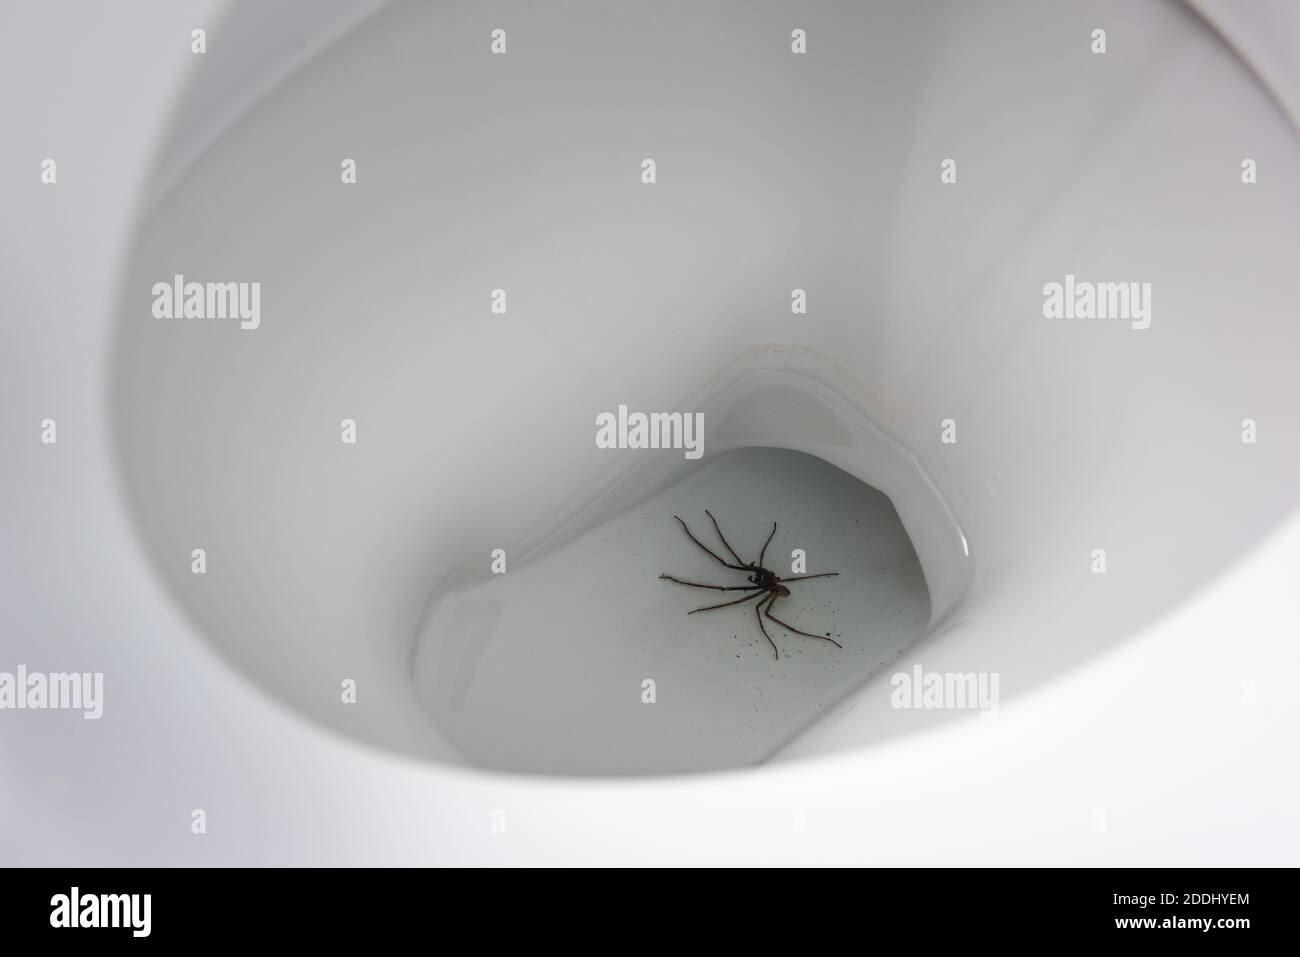 Gigante casa ragno Eratigena atrica caduto nel WC e. annegato se hanno arachnofobia molto spaventoso shock vedere questo male shock Foto Stock